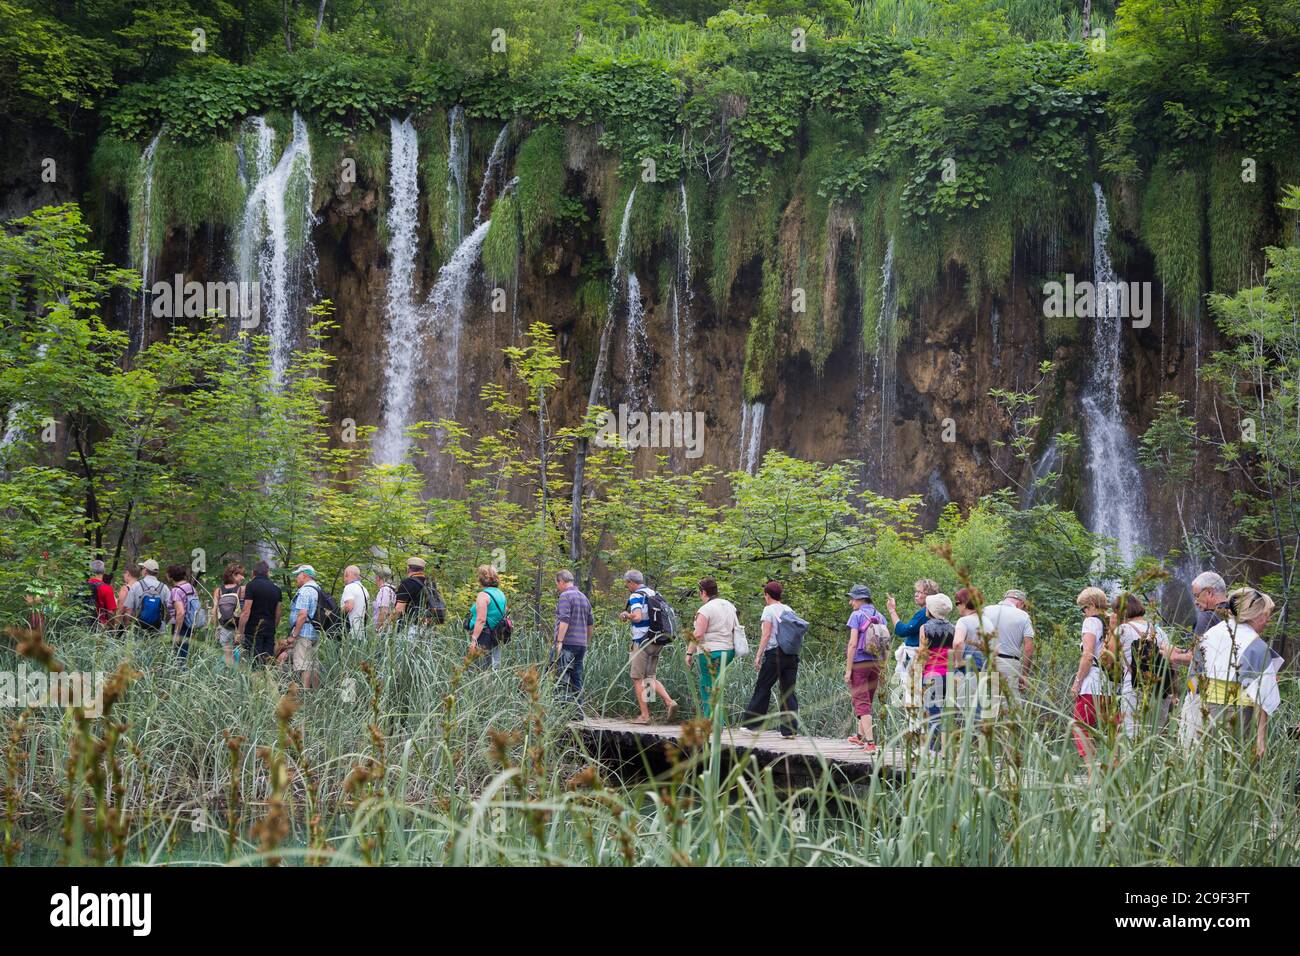 Plitvice Lakes National Park, Lika-Senj County e Karlovac County, Croazia. I visitatori passeggiano sulle passerelle in legno che attraversano il parco. Foto Stock